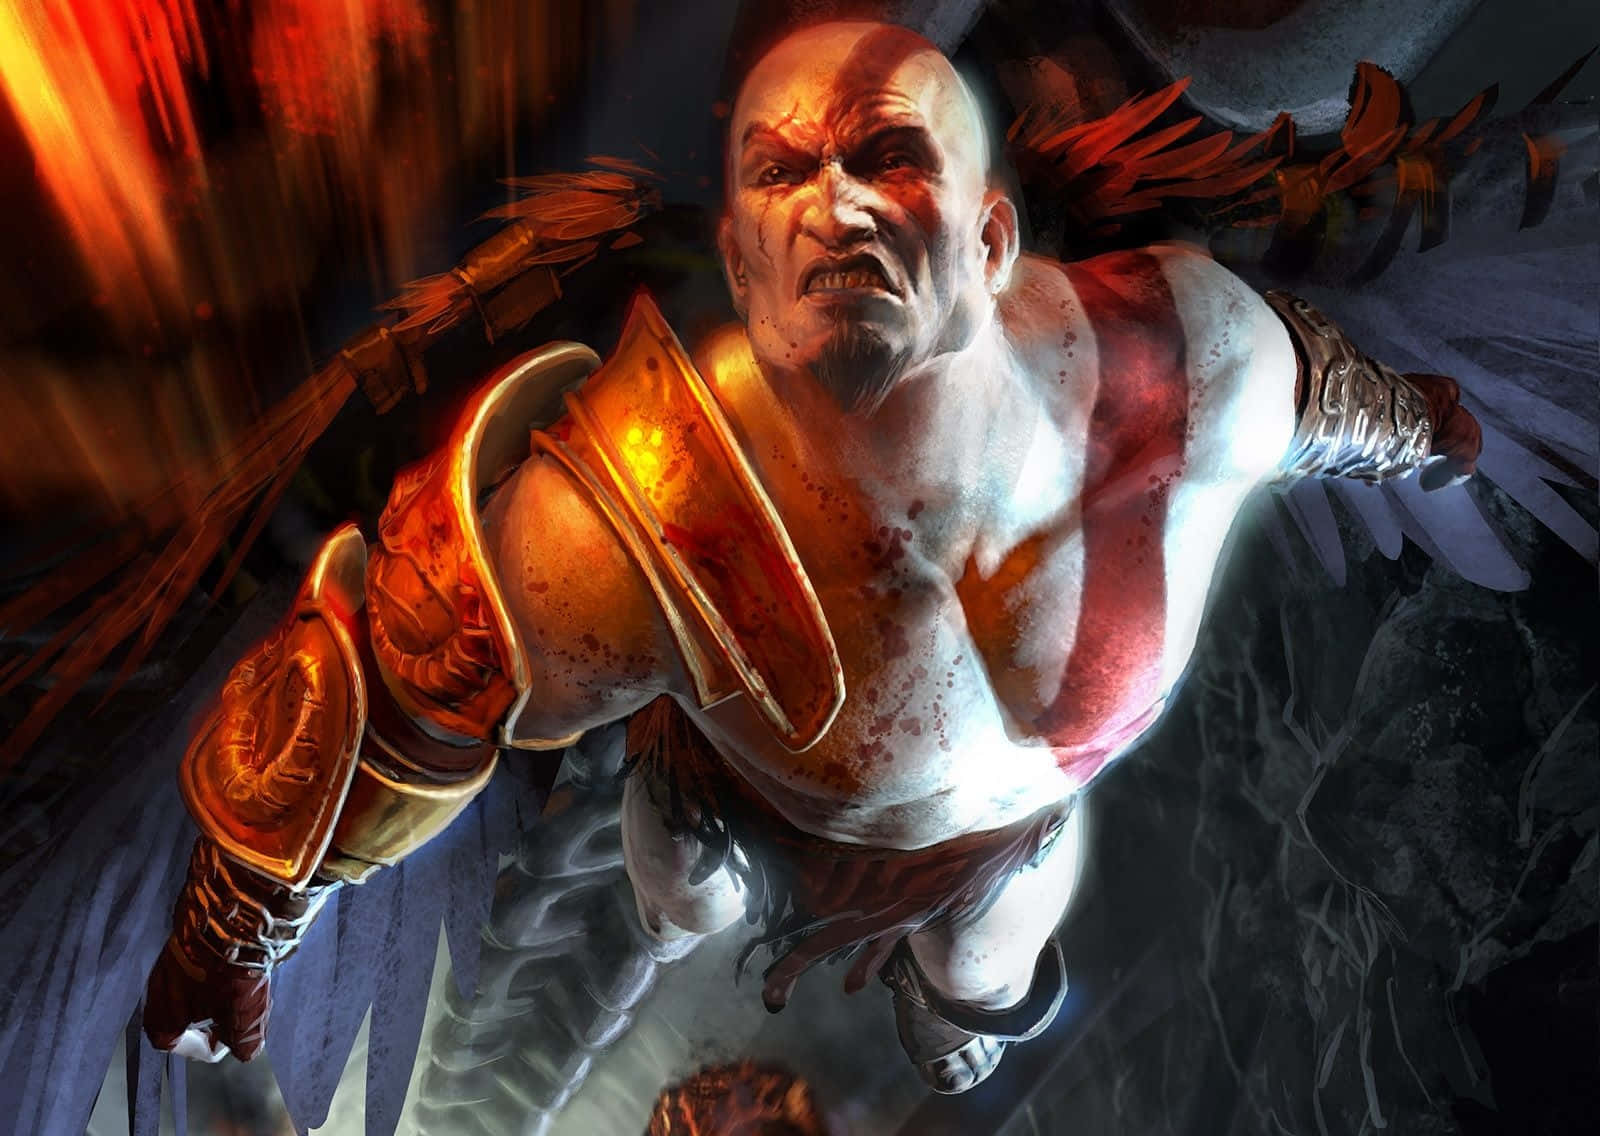 Kratos, den spartanske-af-gud, vender tilbage med hævn i God Of War III. Wallpaper